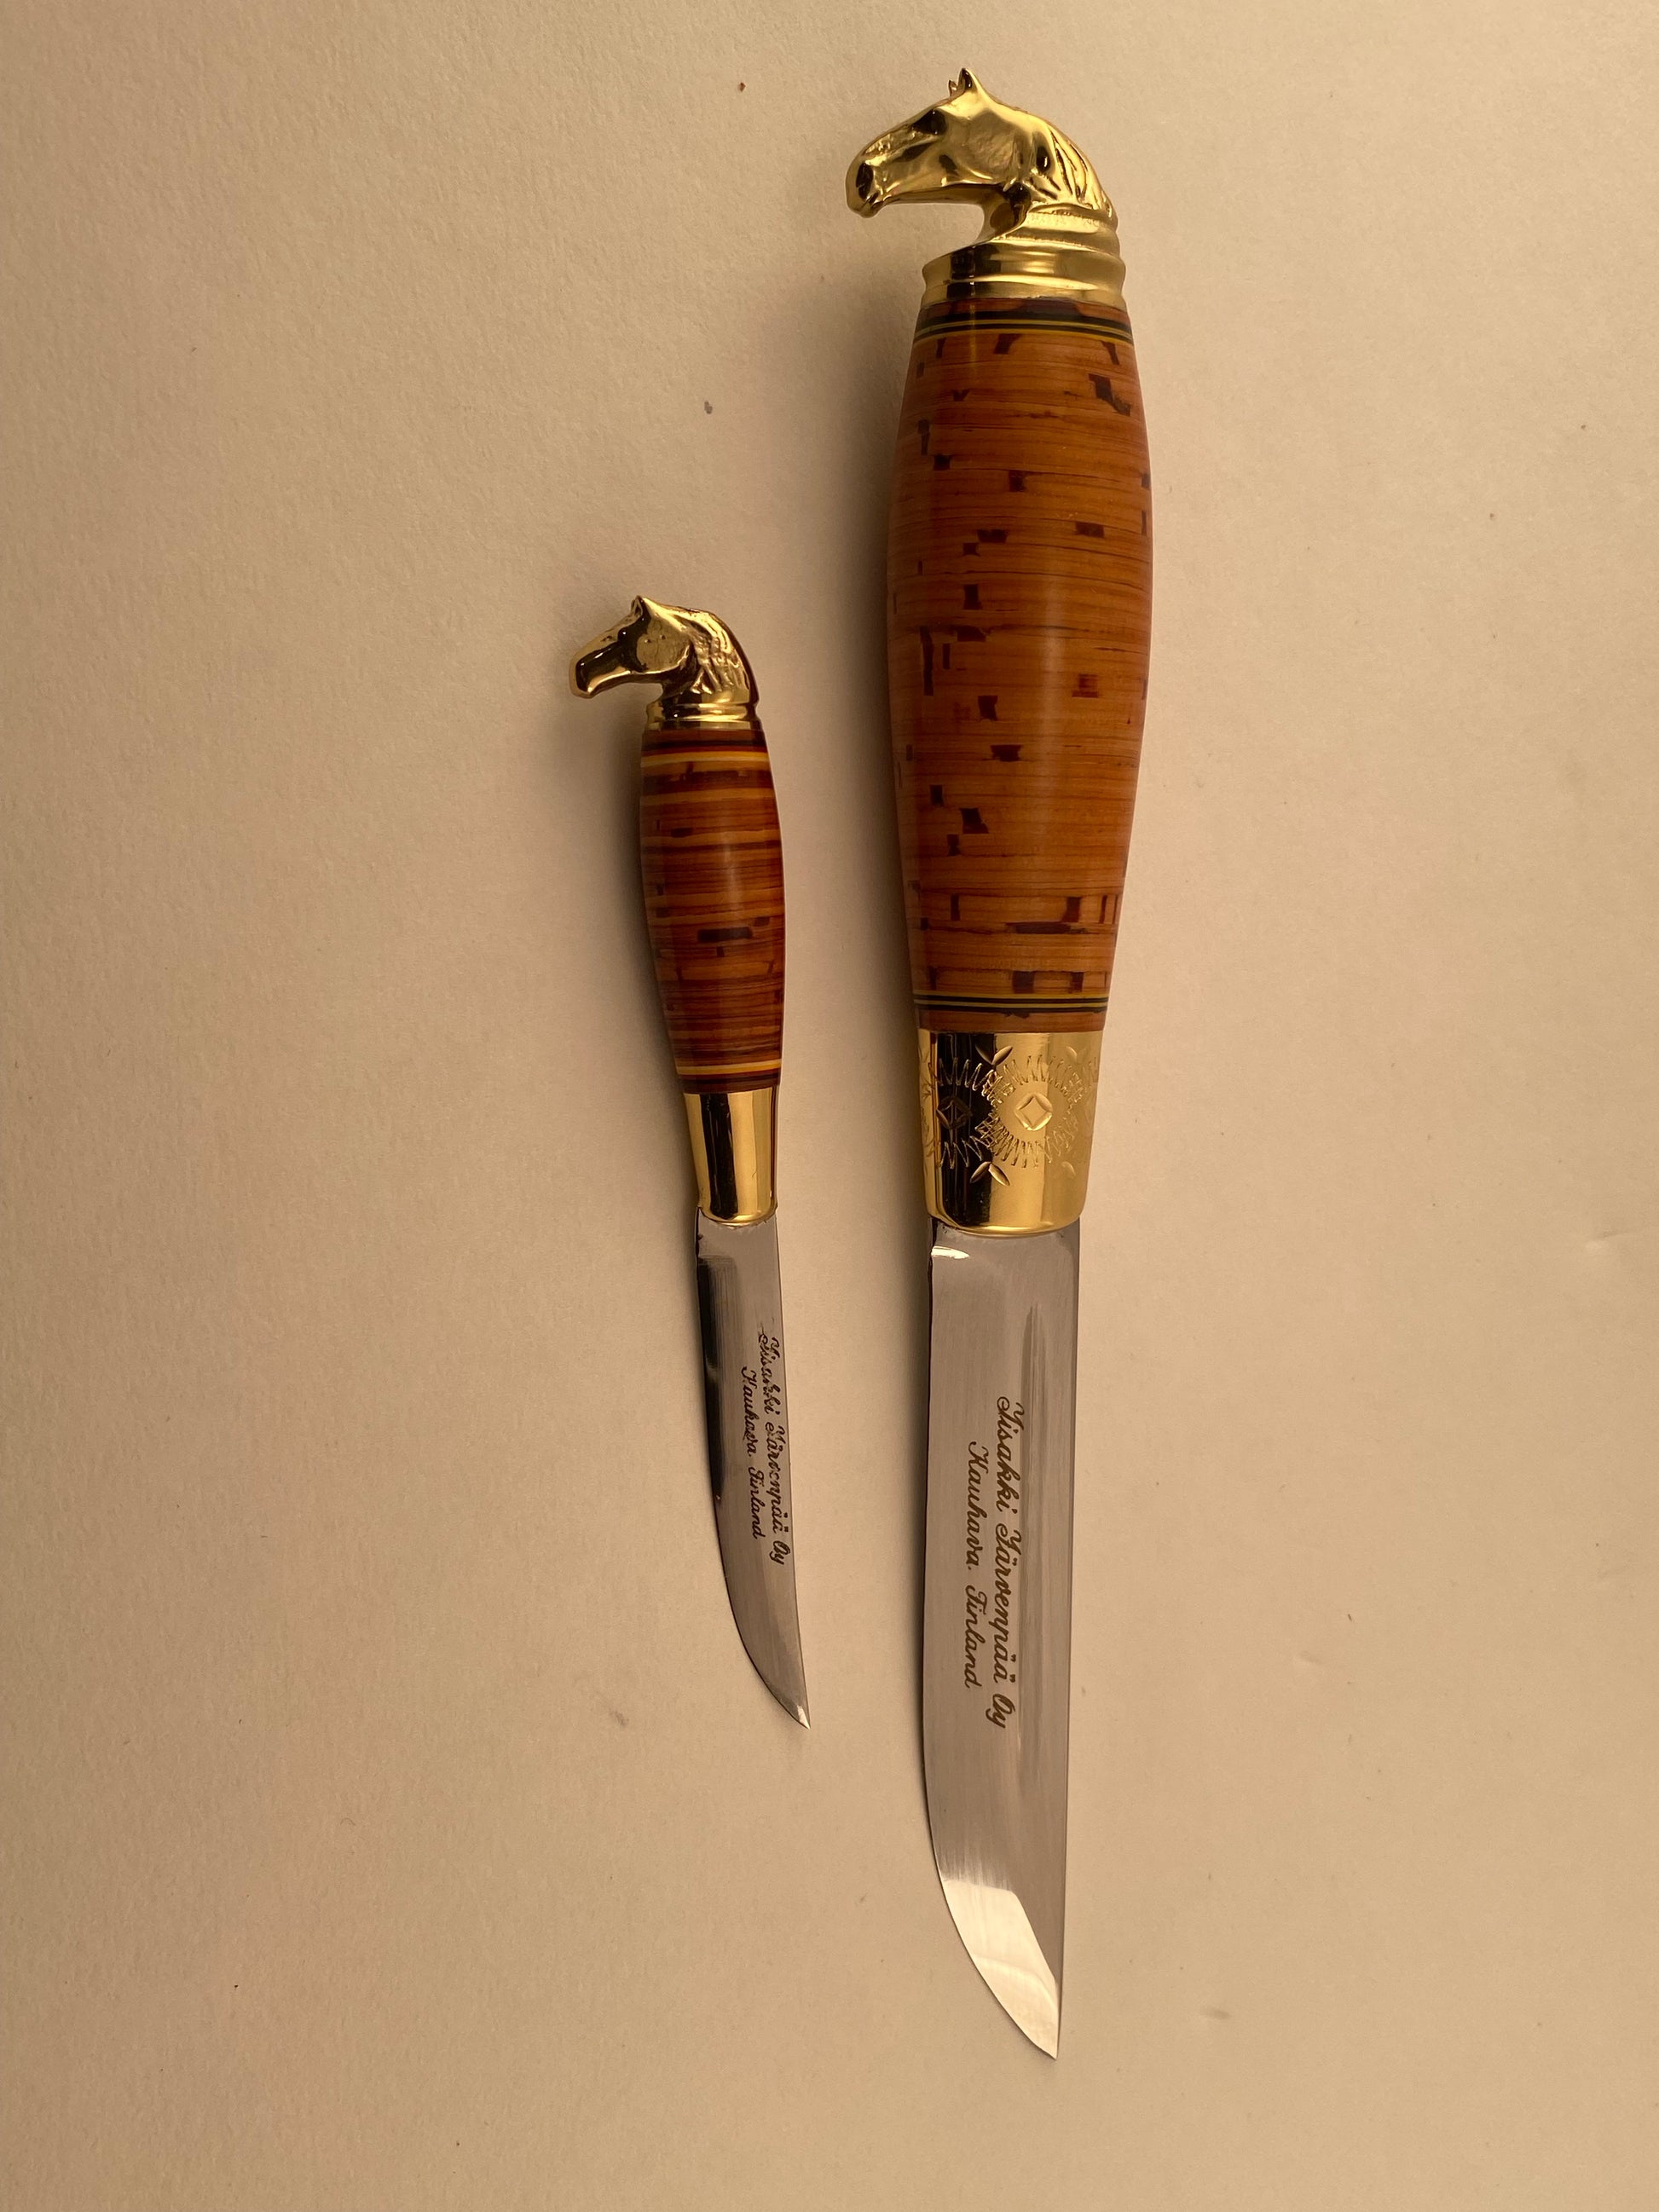 Järvenpää Outdoor Bushcraft Puukko Combo knife set